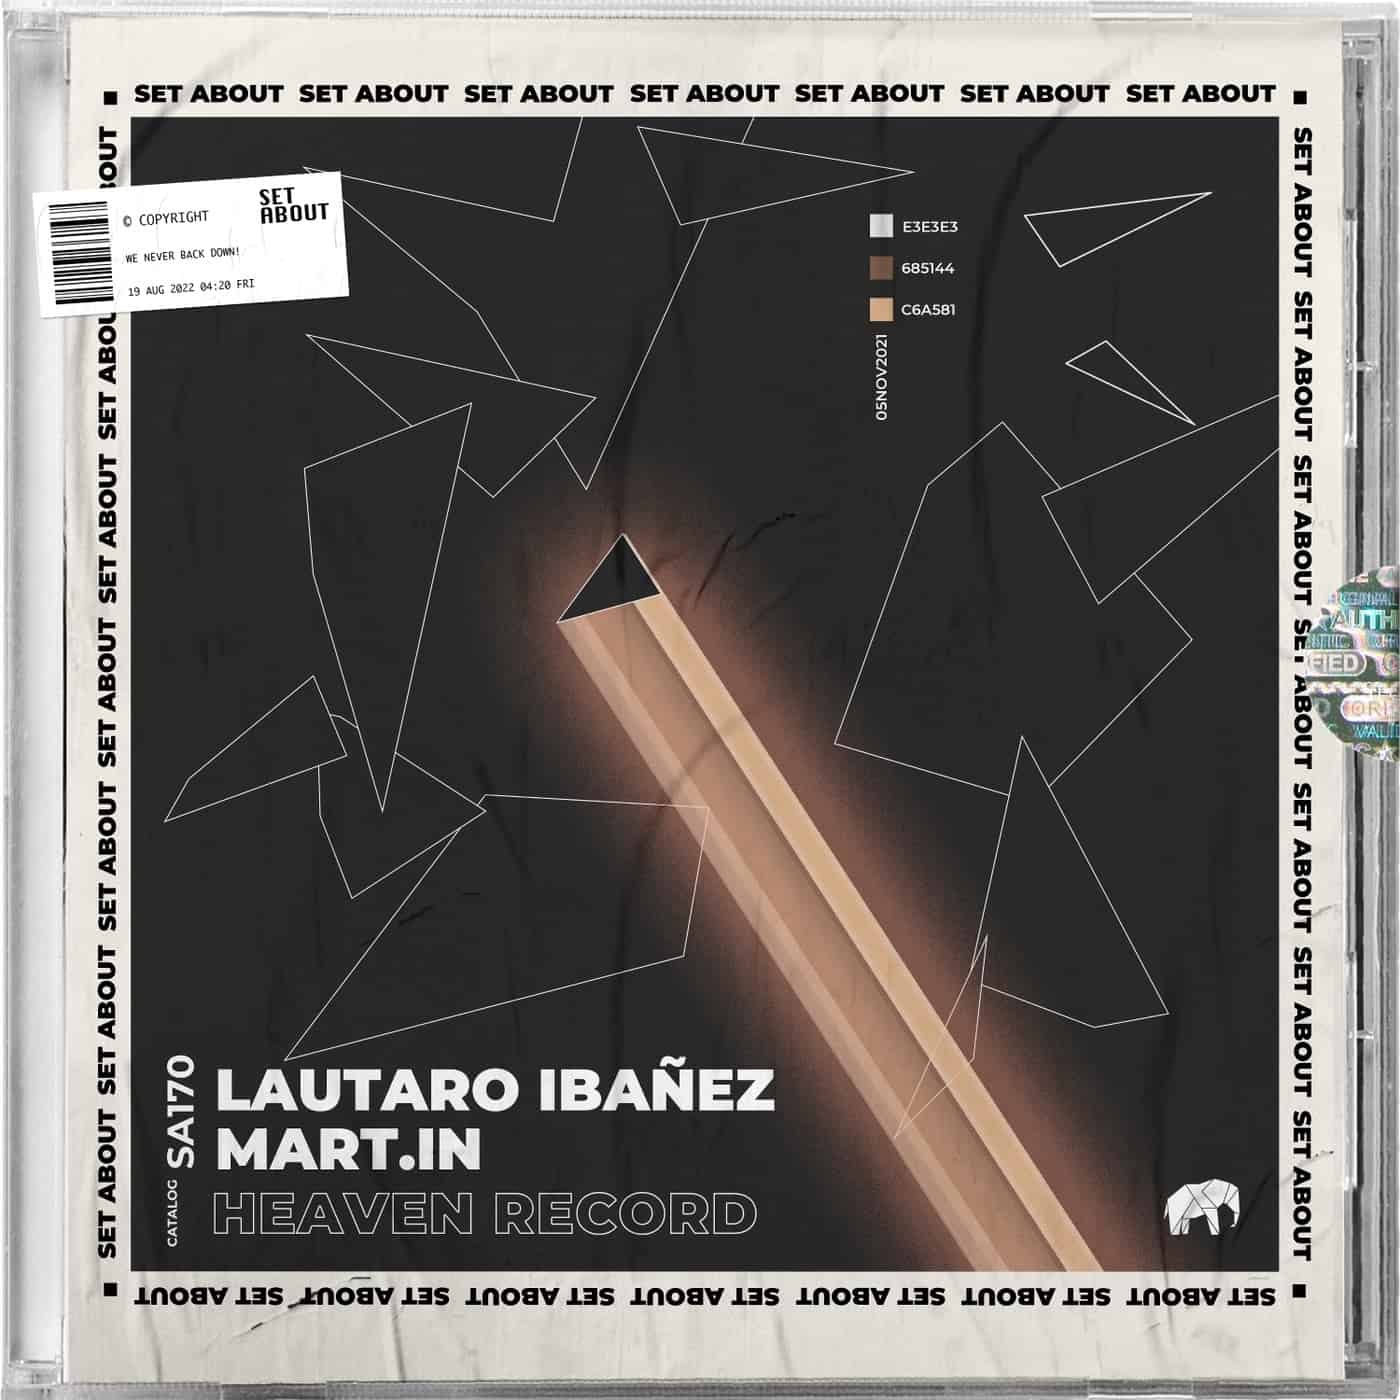 Download Lautaro Ibañez - Heaven Record on Electrobuzz